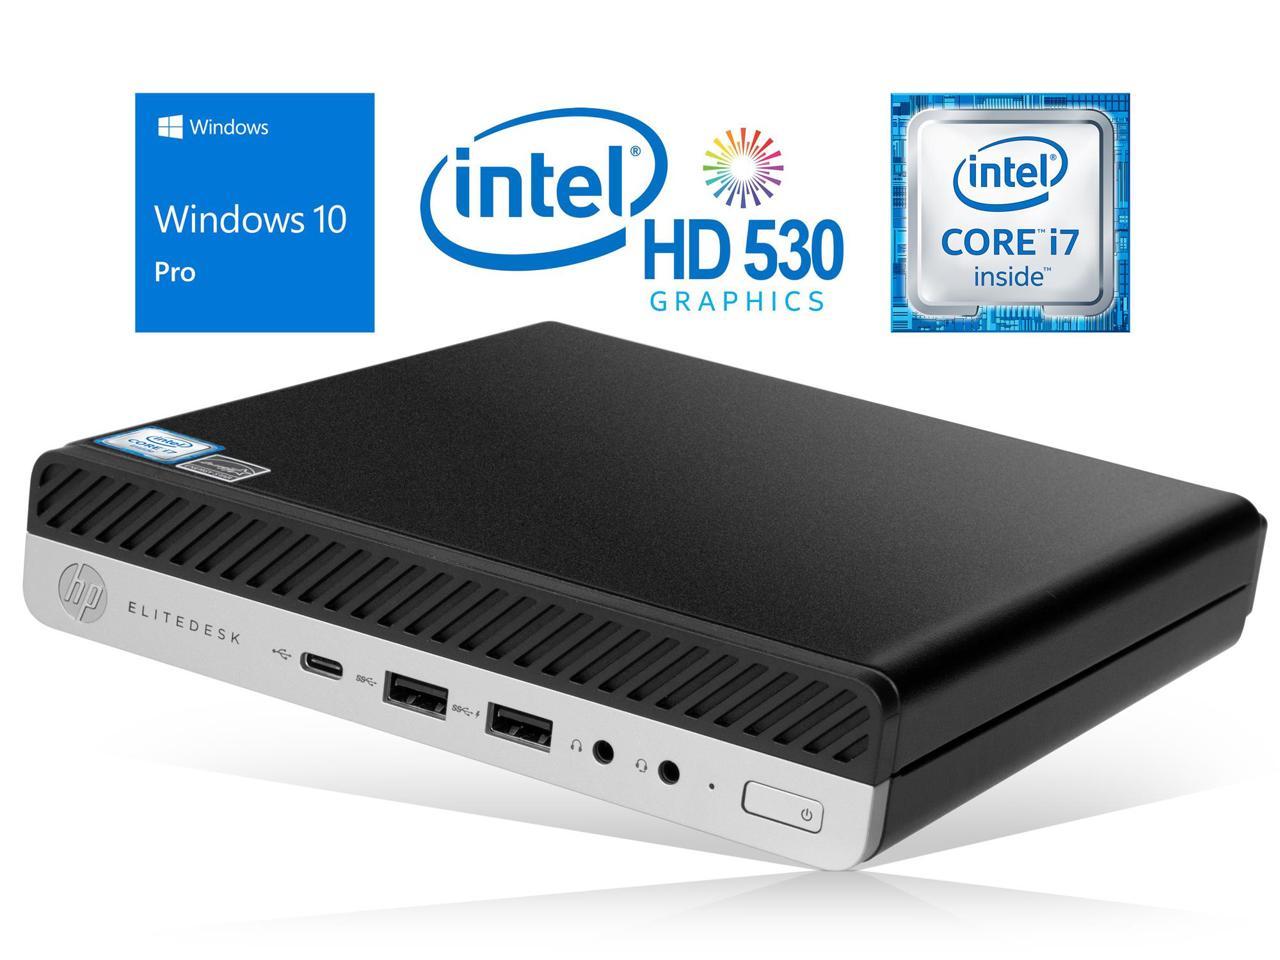 HP EliteDesk 800 G3 Mini PC, Intel Core i7-6700 Upto 4.0GHz, 8GB RAM, 128GB NVMe SSD + 1TB HDD, DisplayPort, Wi-Fi, Bluetooth, Windows 10 Pro